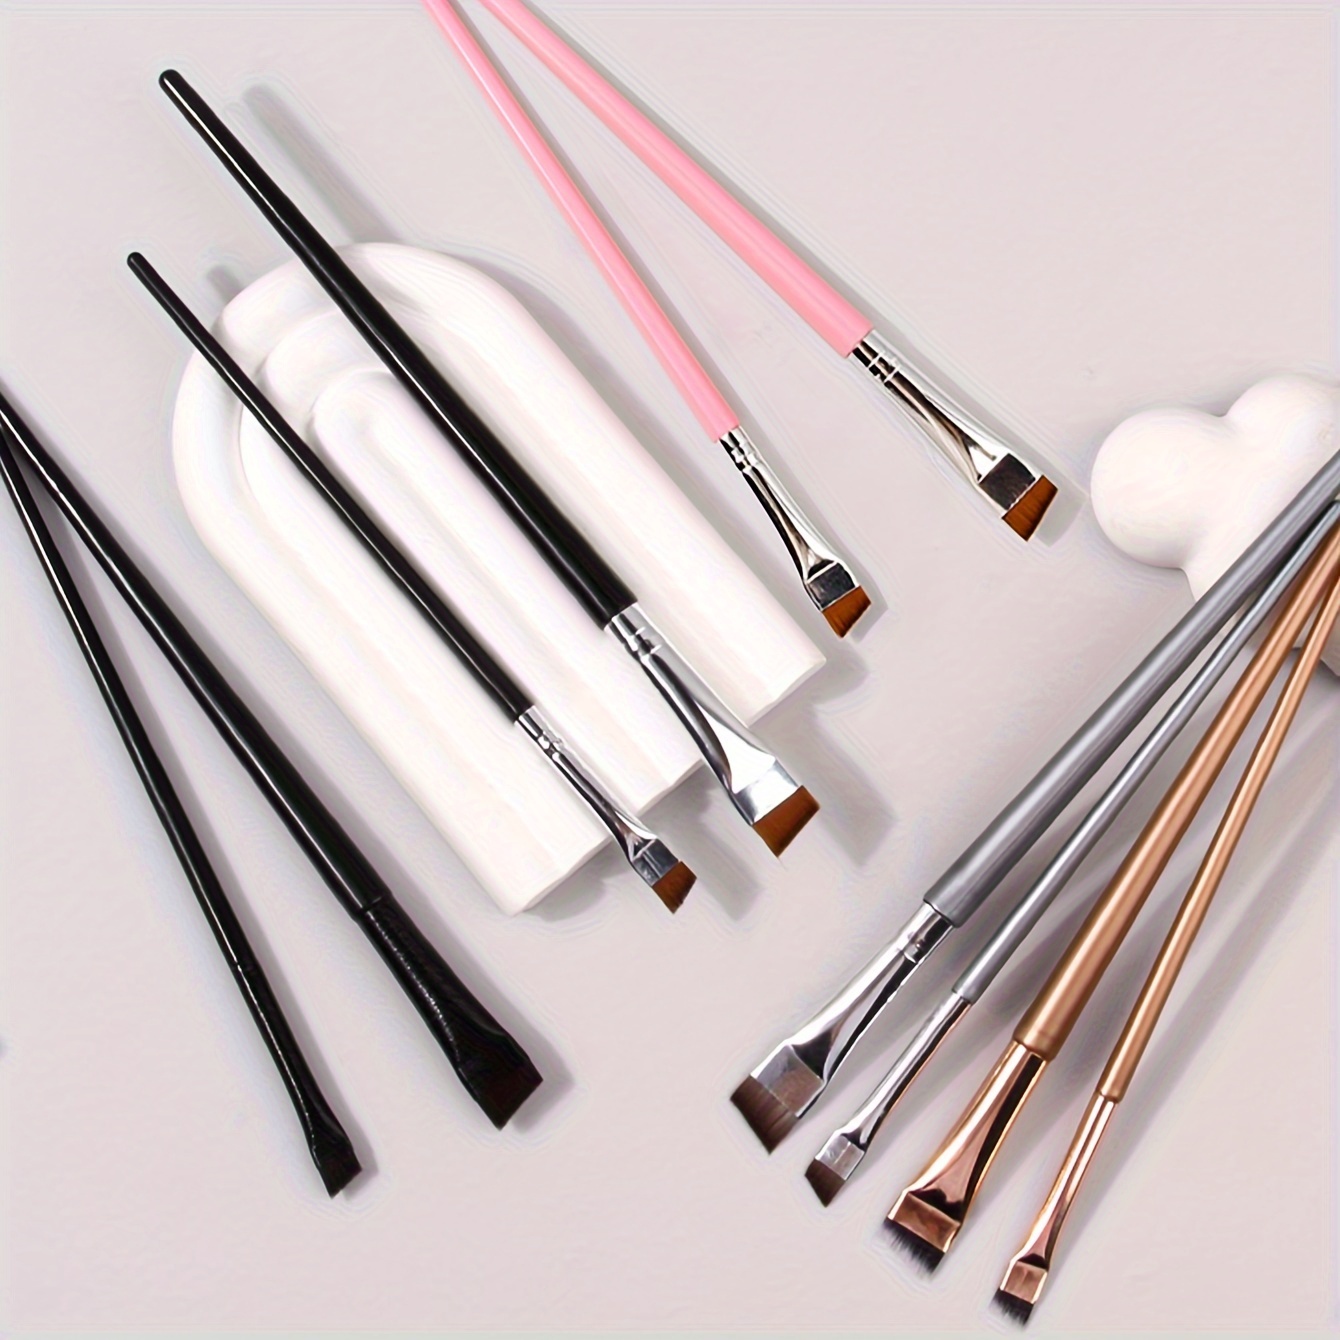 

12pcs Ultra Fine Angled Eyeliner Brushes, Soft Bristle Makeup Brush Set, Portable Multi-use Eyebrow Brushes, Cosmetic Application Tools